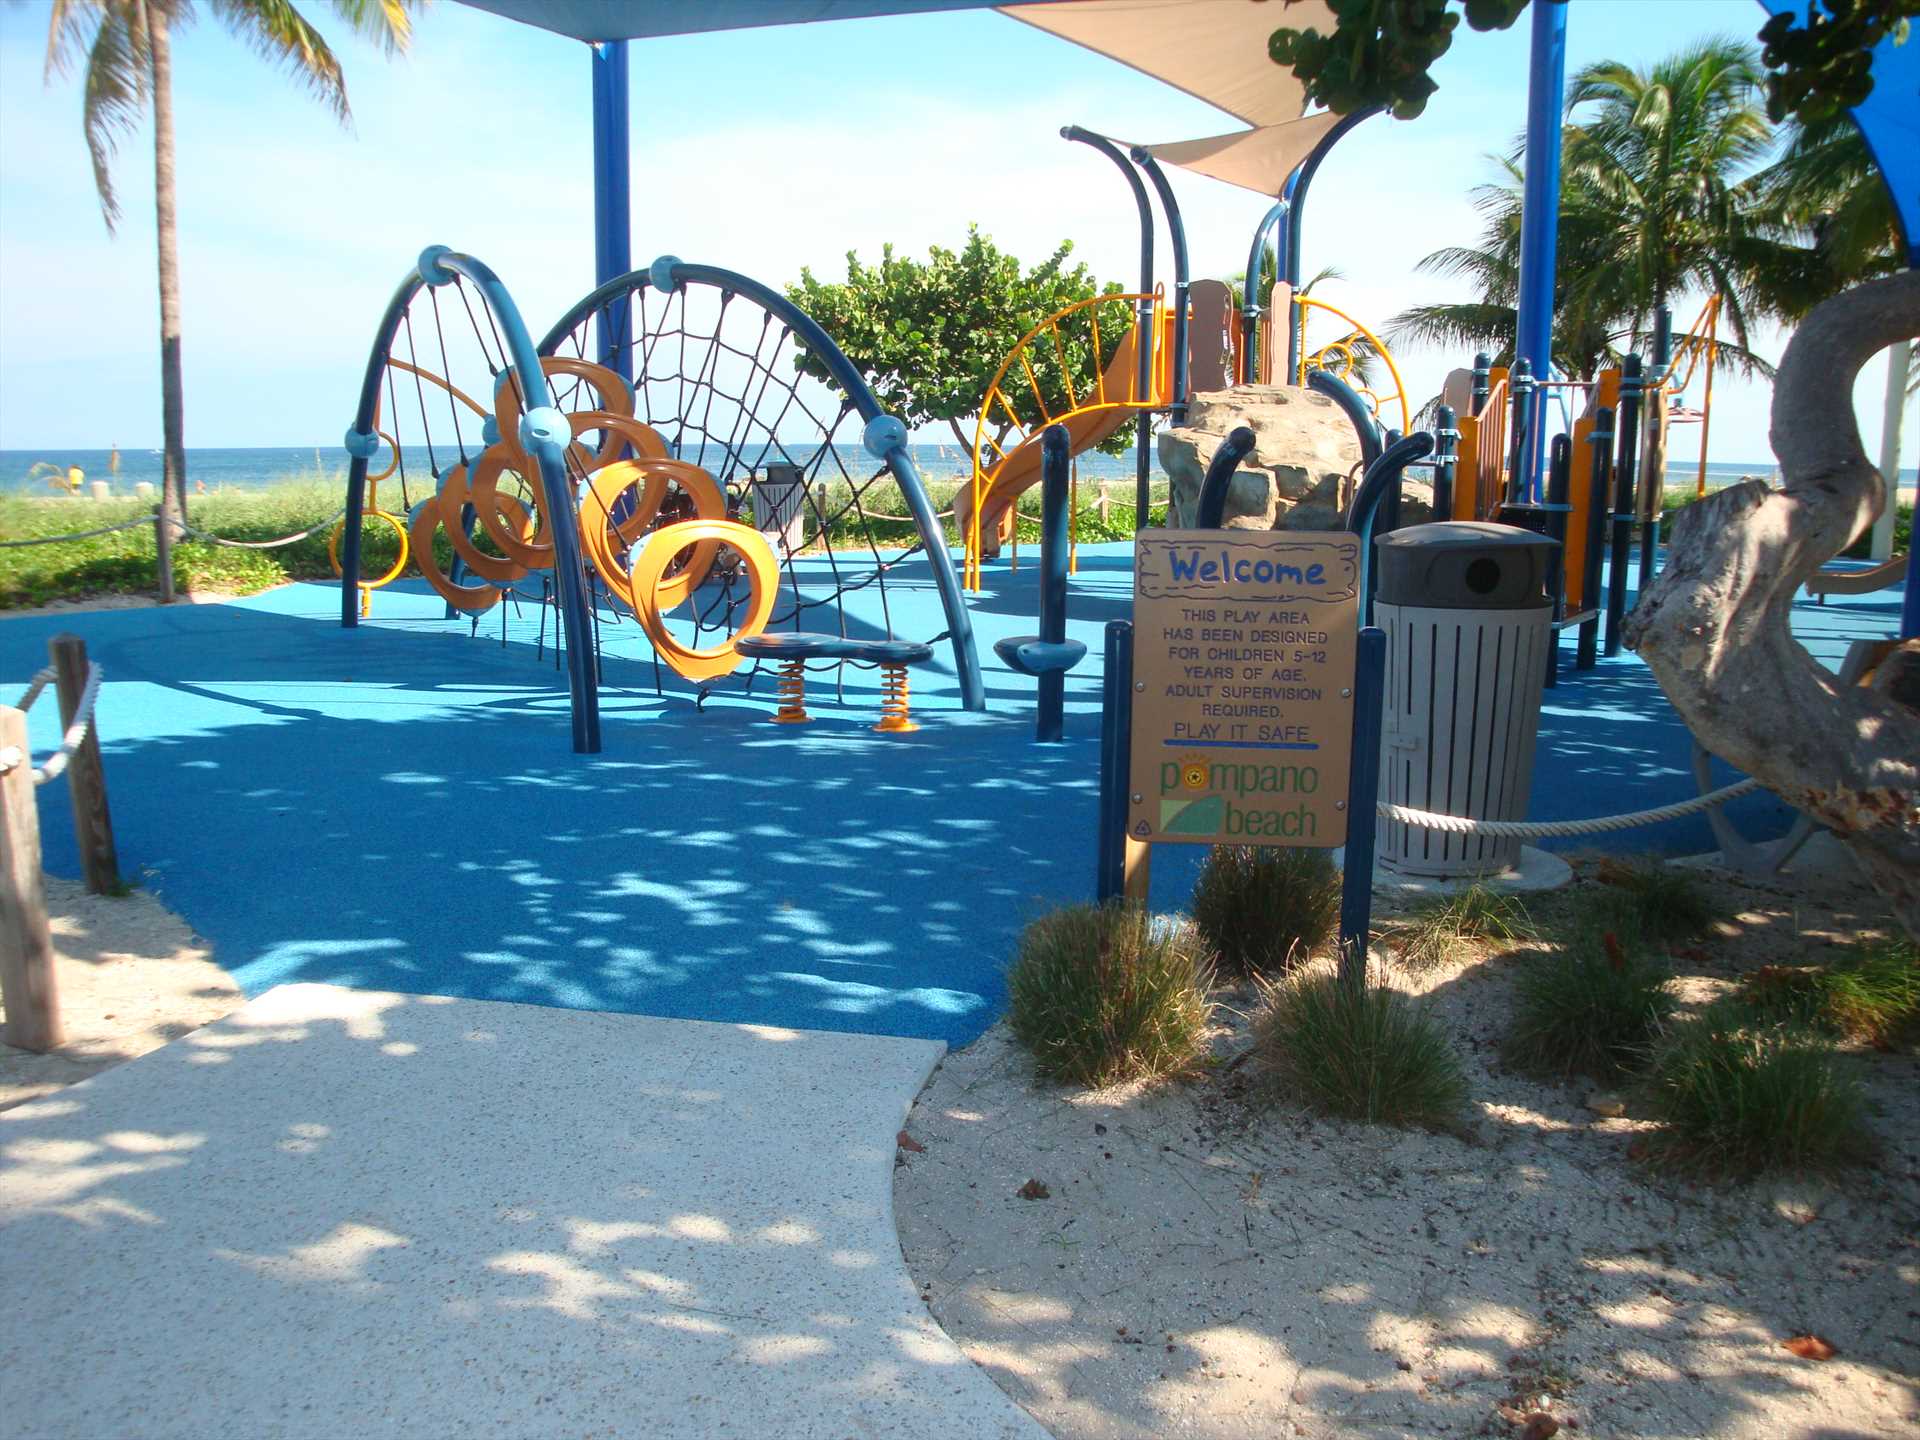 The kids will enjoy the beachfront playground.